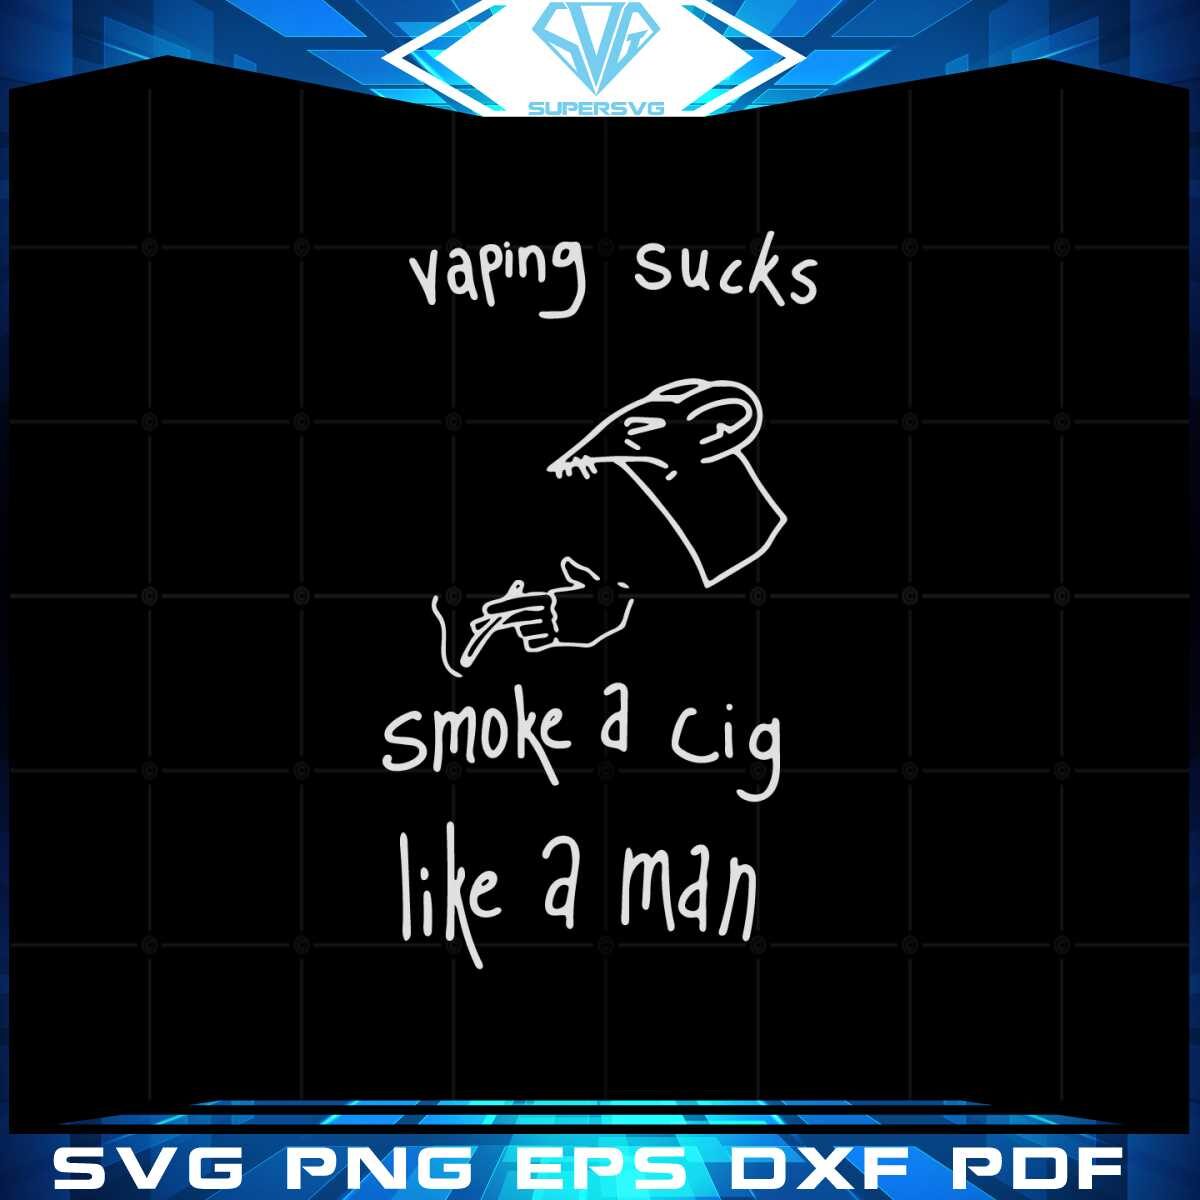 vaping-sucks-smoke-a-cigarette-like-a-man-svg-cutting-files